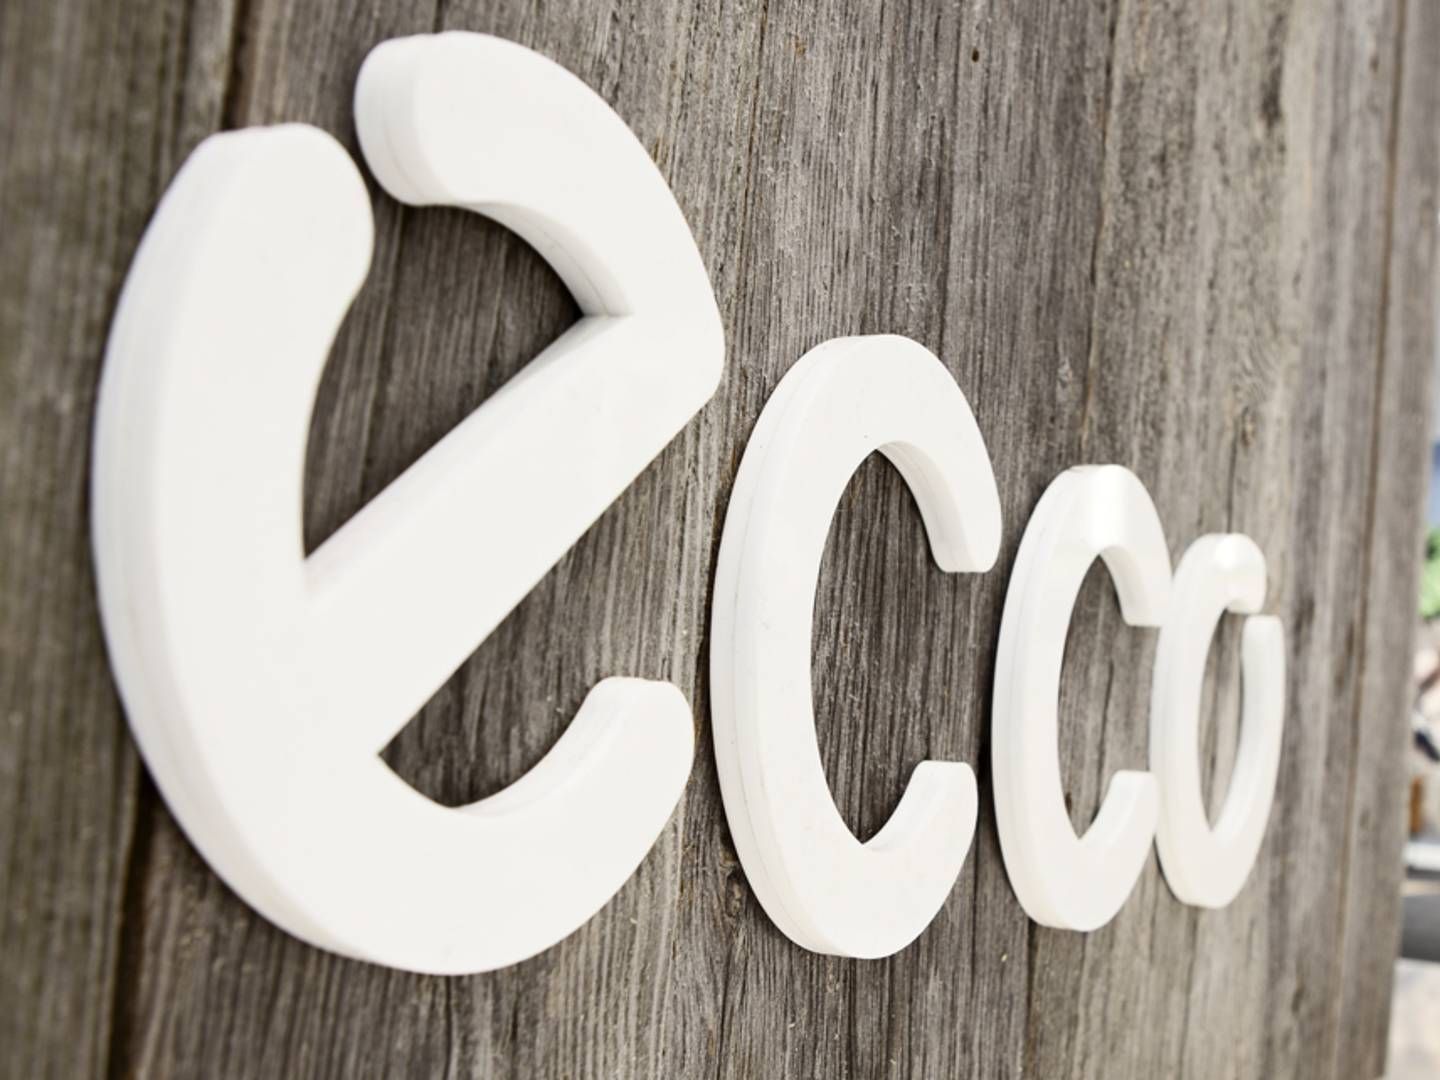 Ecco er færdig som leverandør til Salling stormagasiner. | Foto: PR / Ecco